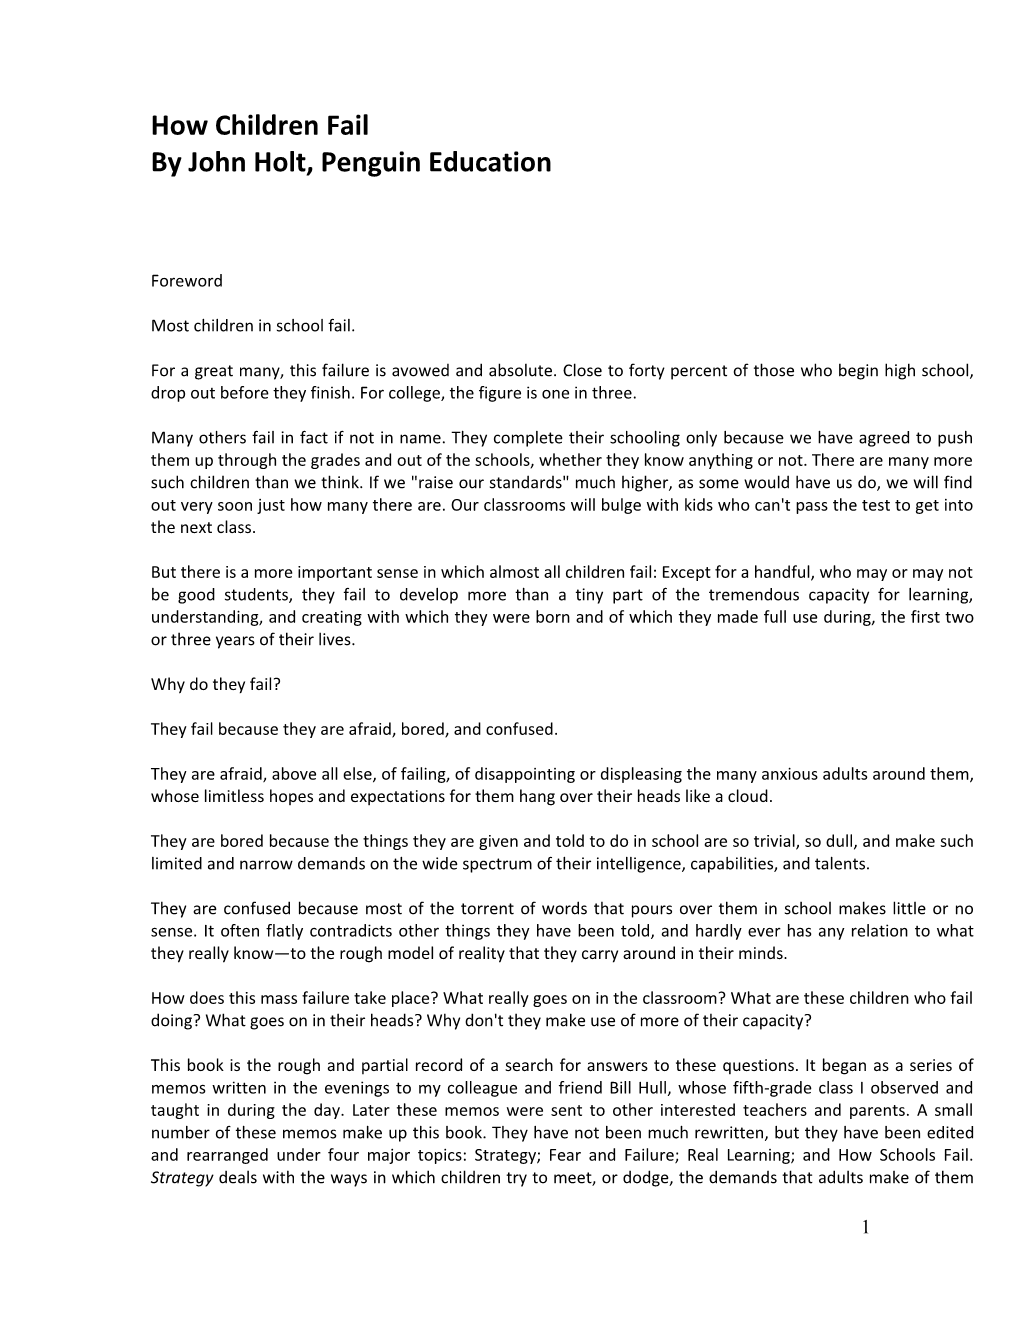 By John Holt, Penguin Education